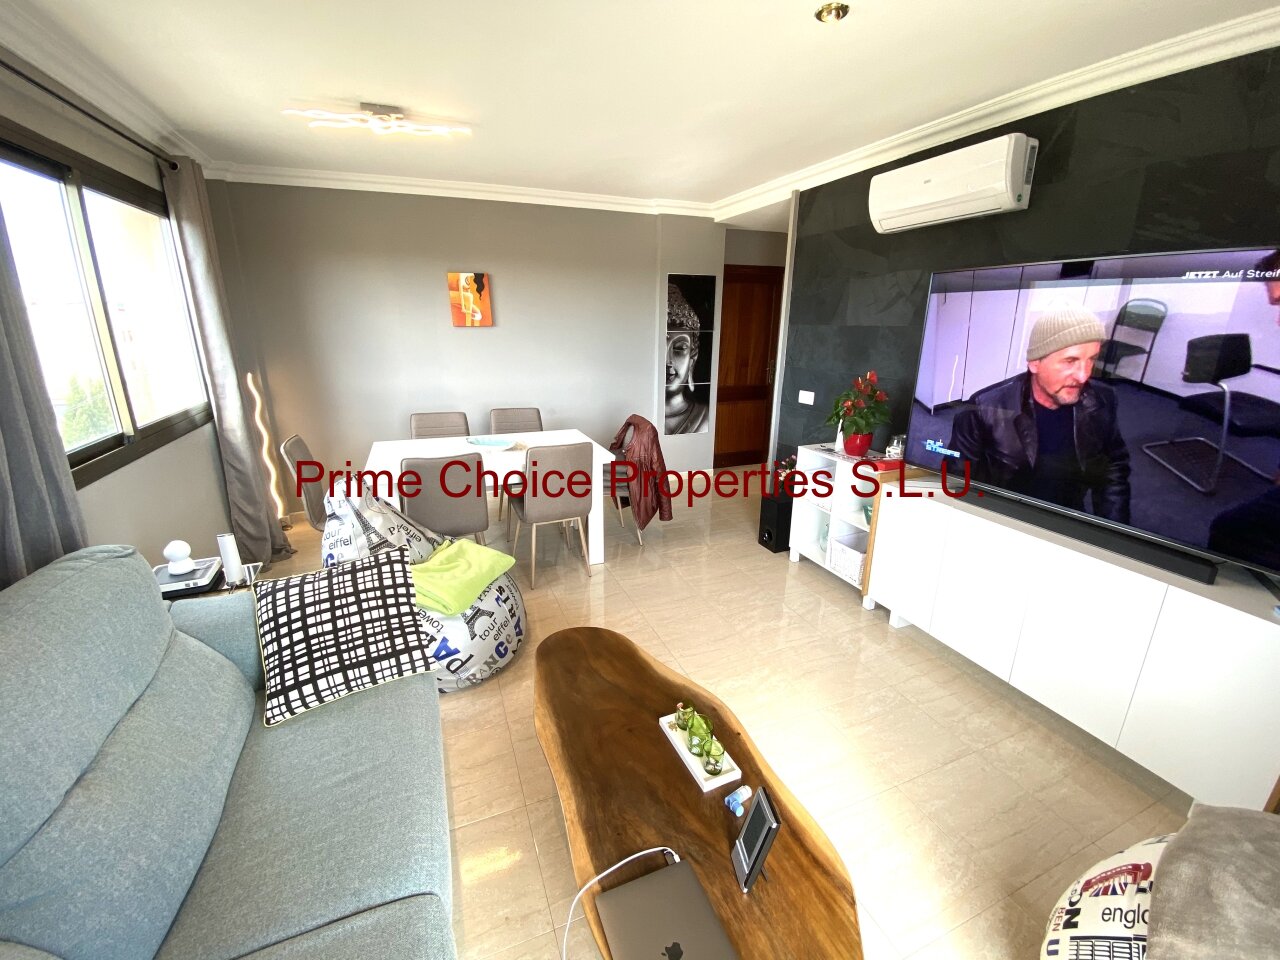 Wohnzimmer mit Decken-Infrarot-Heizungen und Klimaanlage